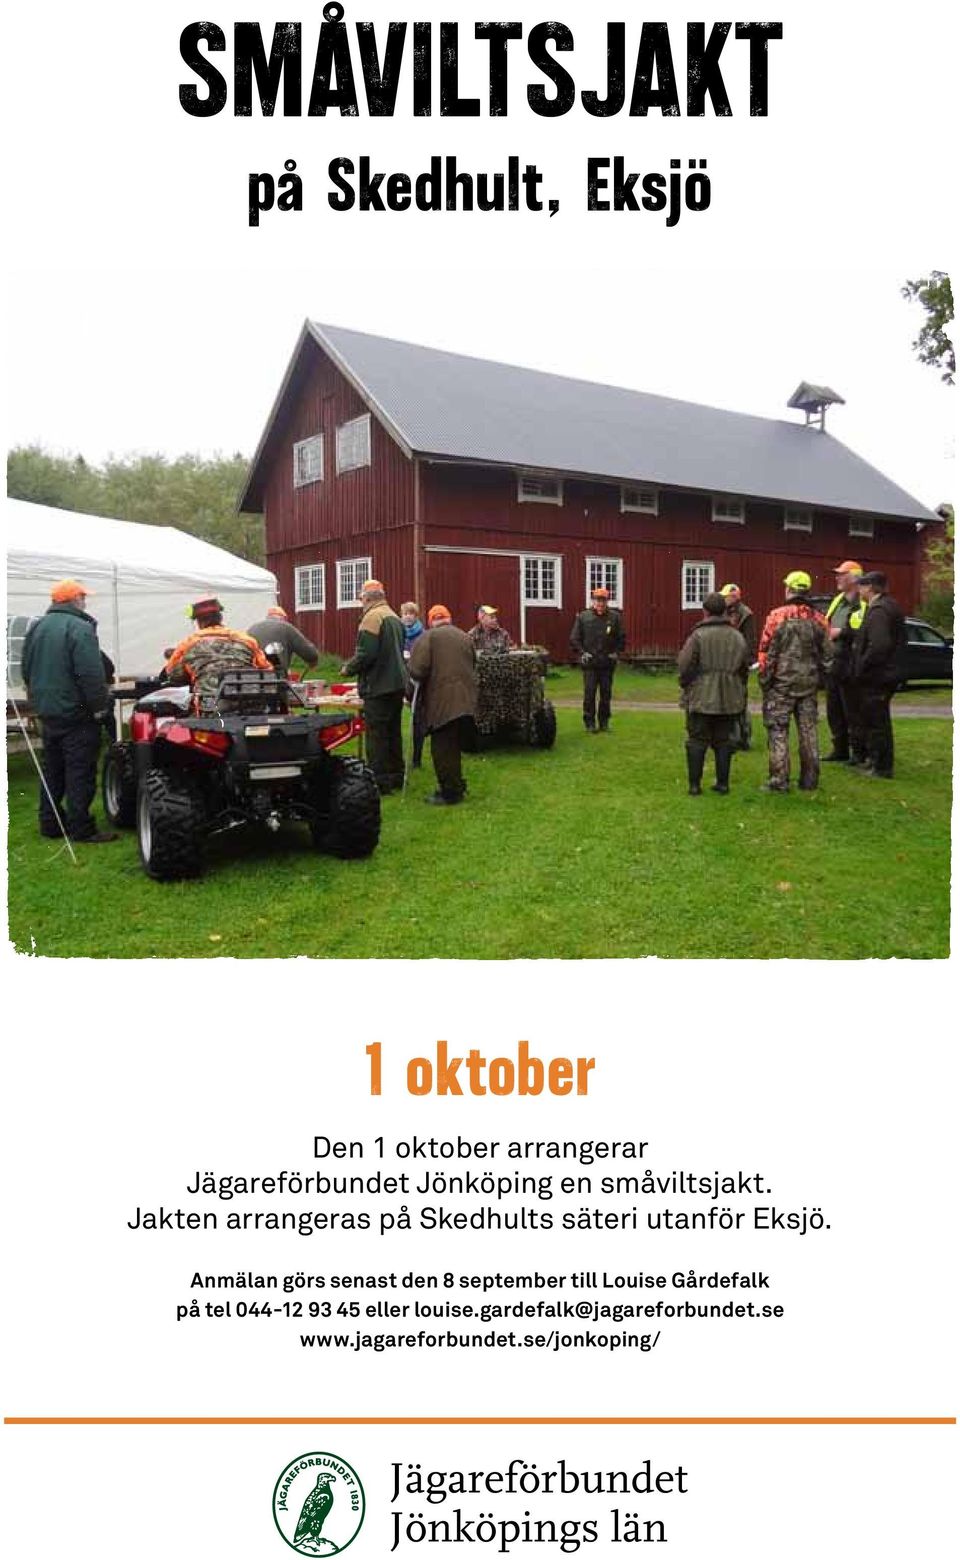 Jakten arrangeras på Skedhults säteri utanför Eksjö.